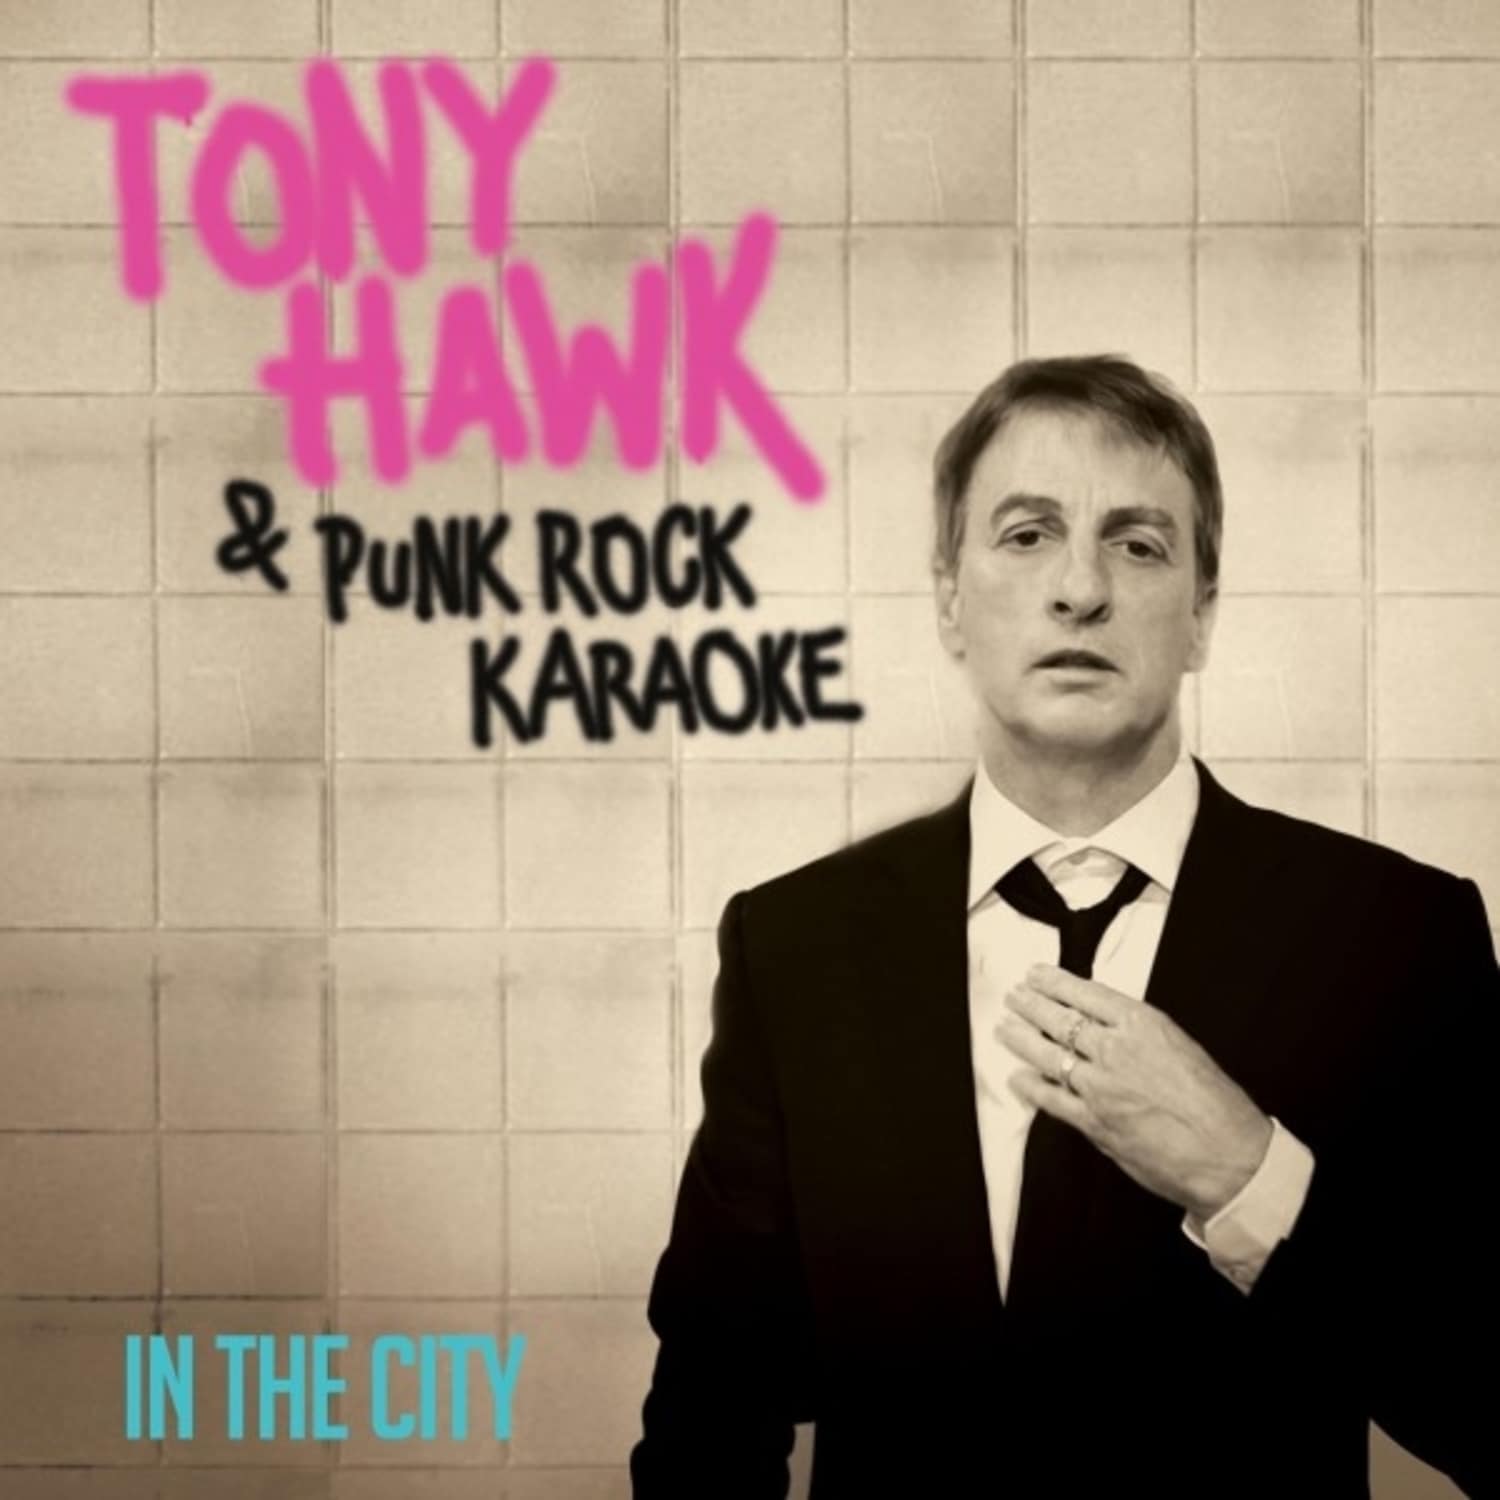 Tony Hawk & Punk Rock Karaoke - IN THE CITY PURPLE 